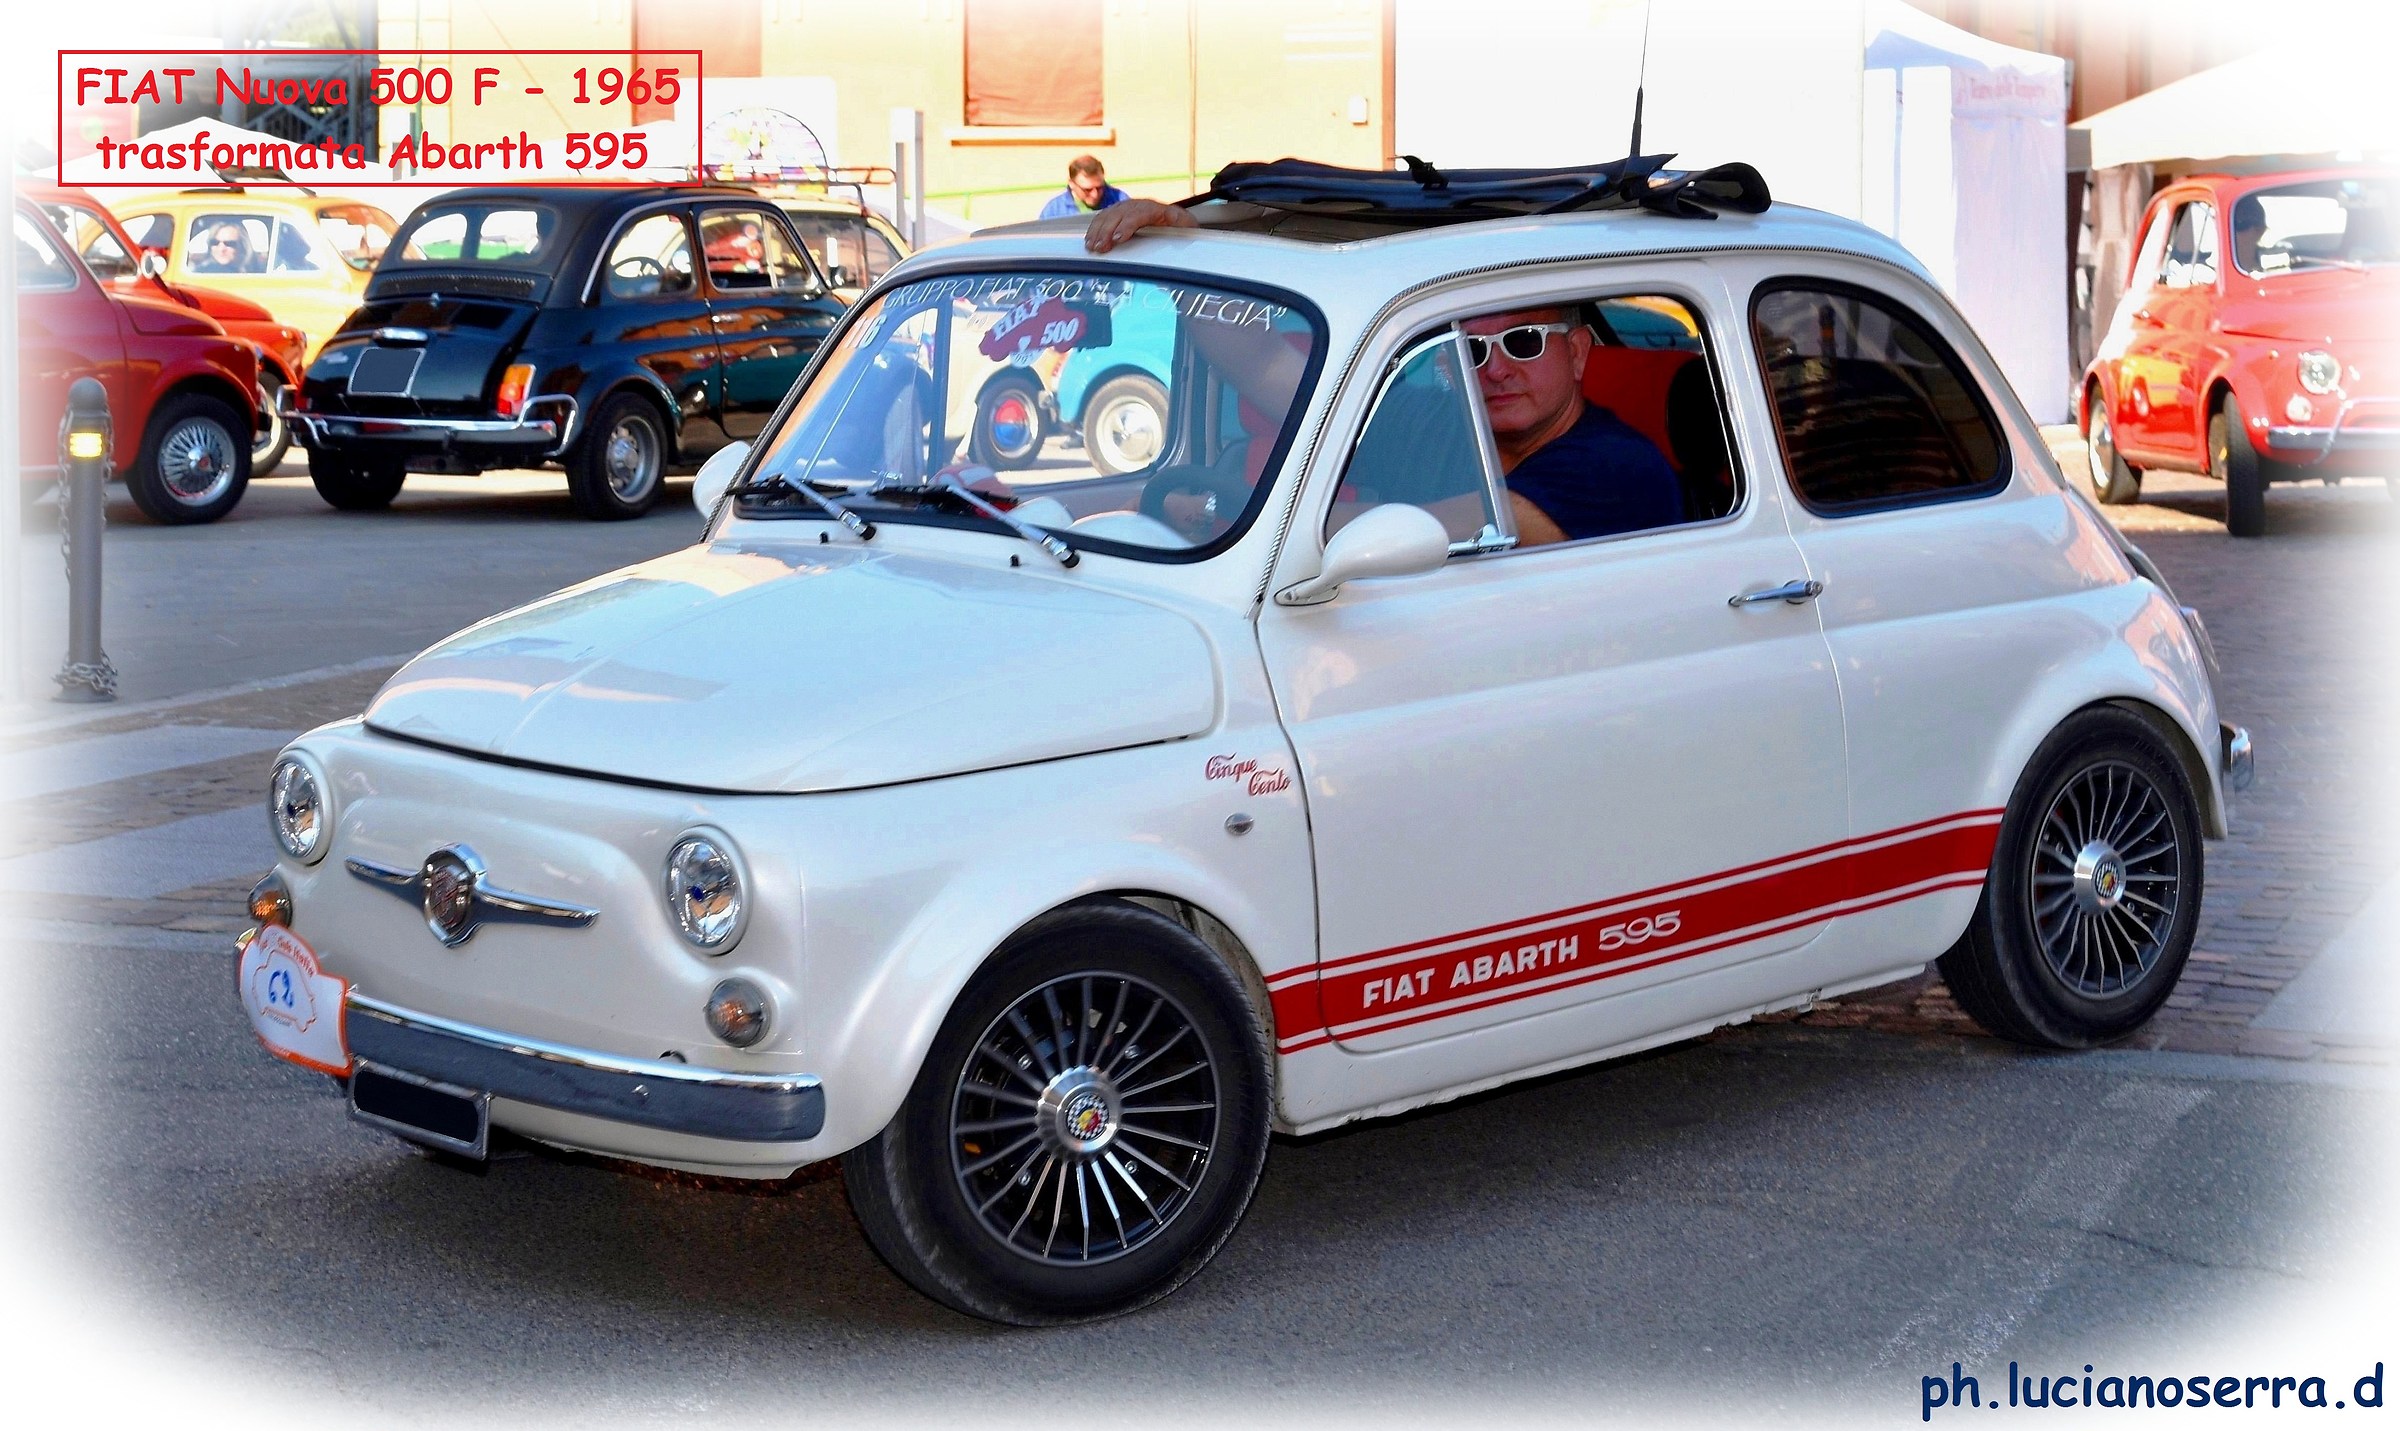 Fiat Nuova 500 F - 1965 transformed Abarth...